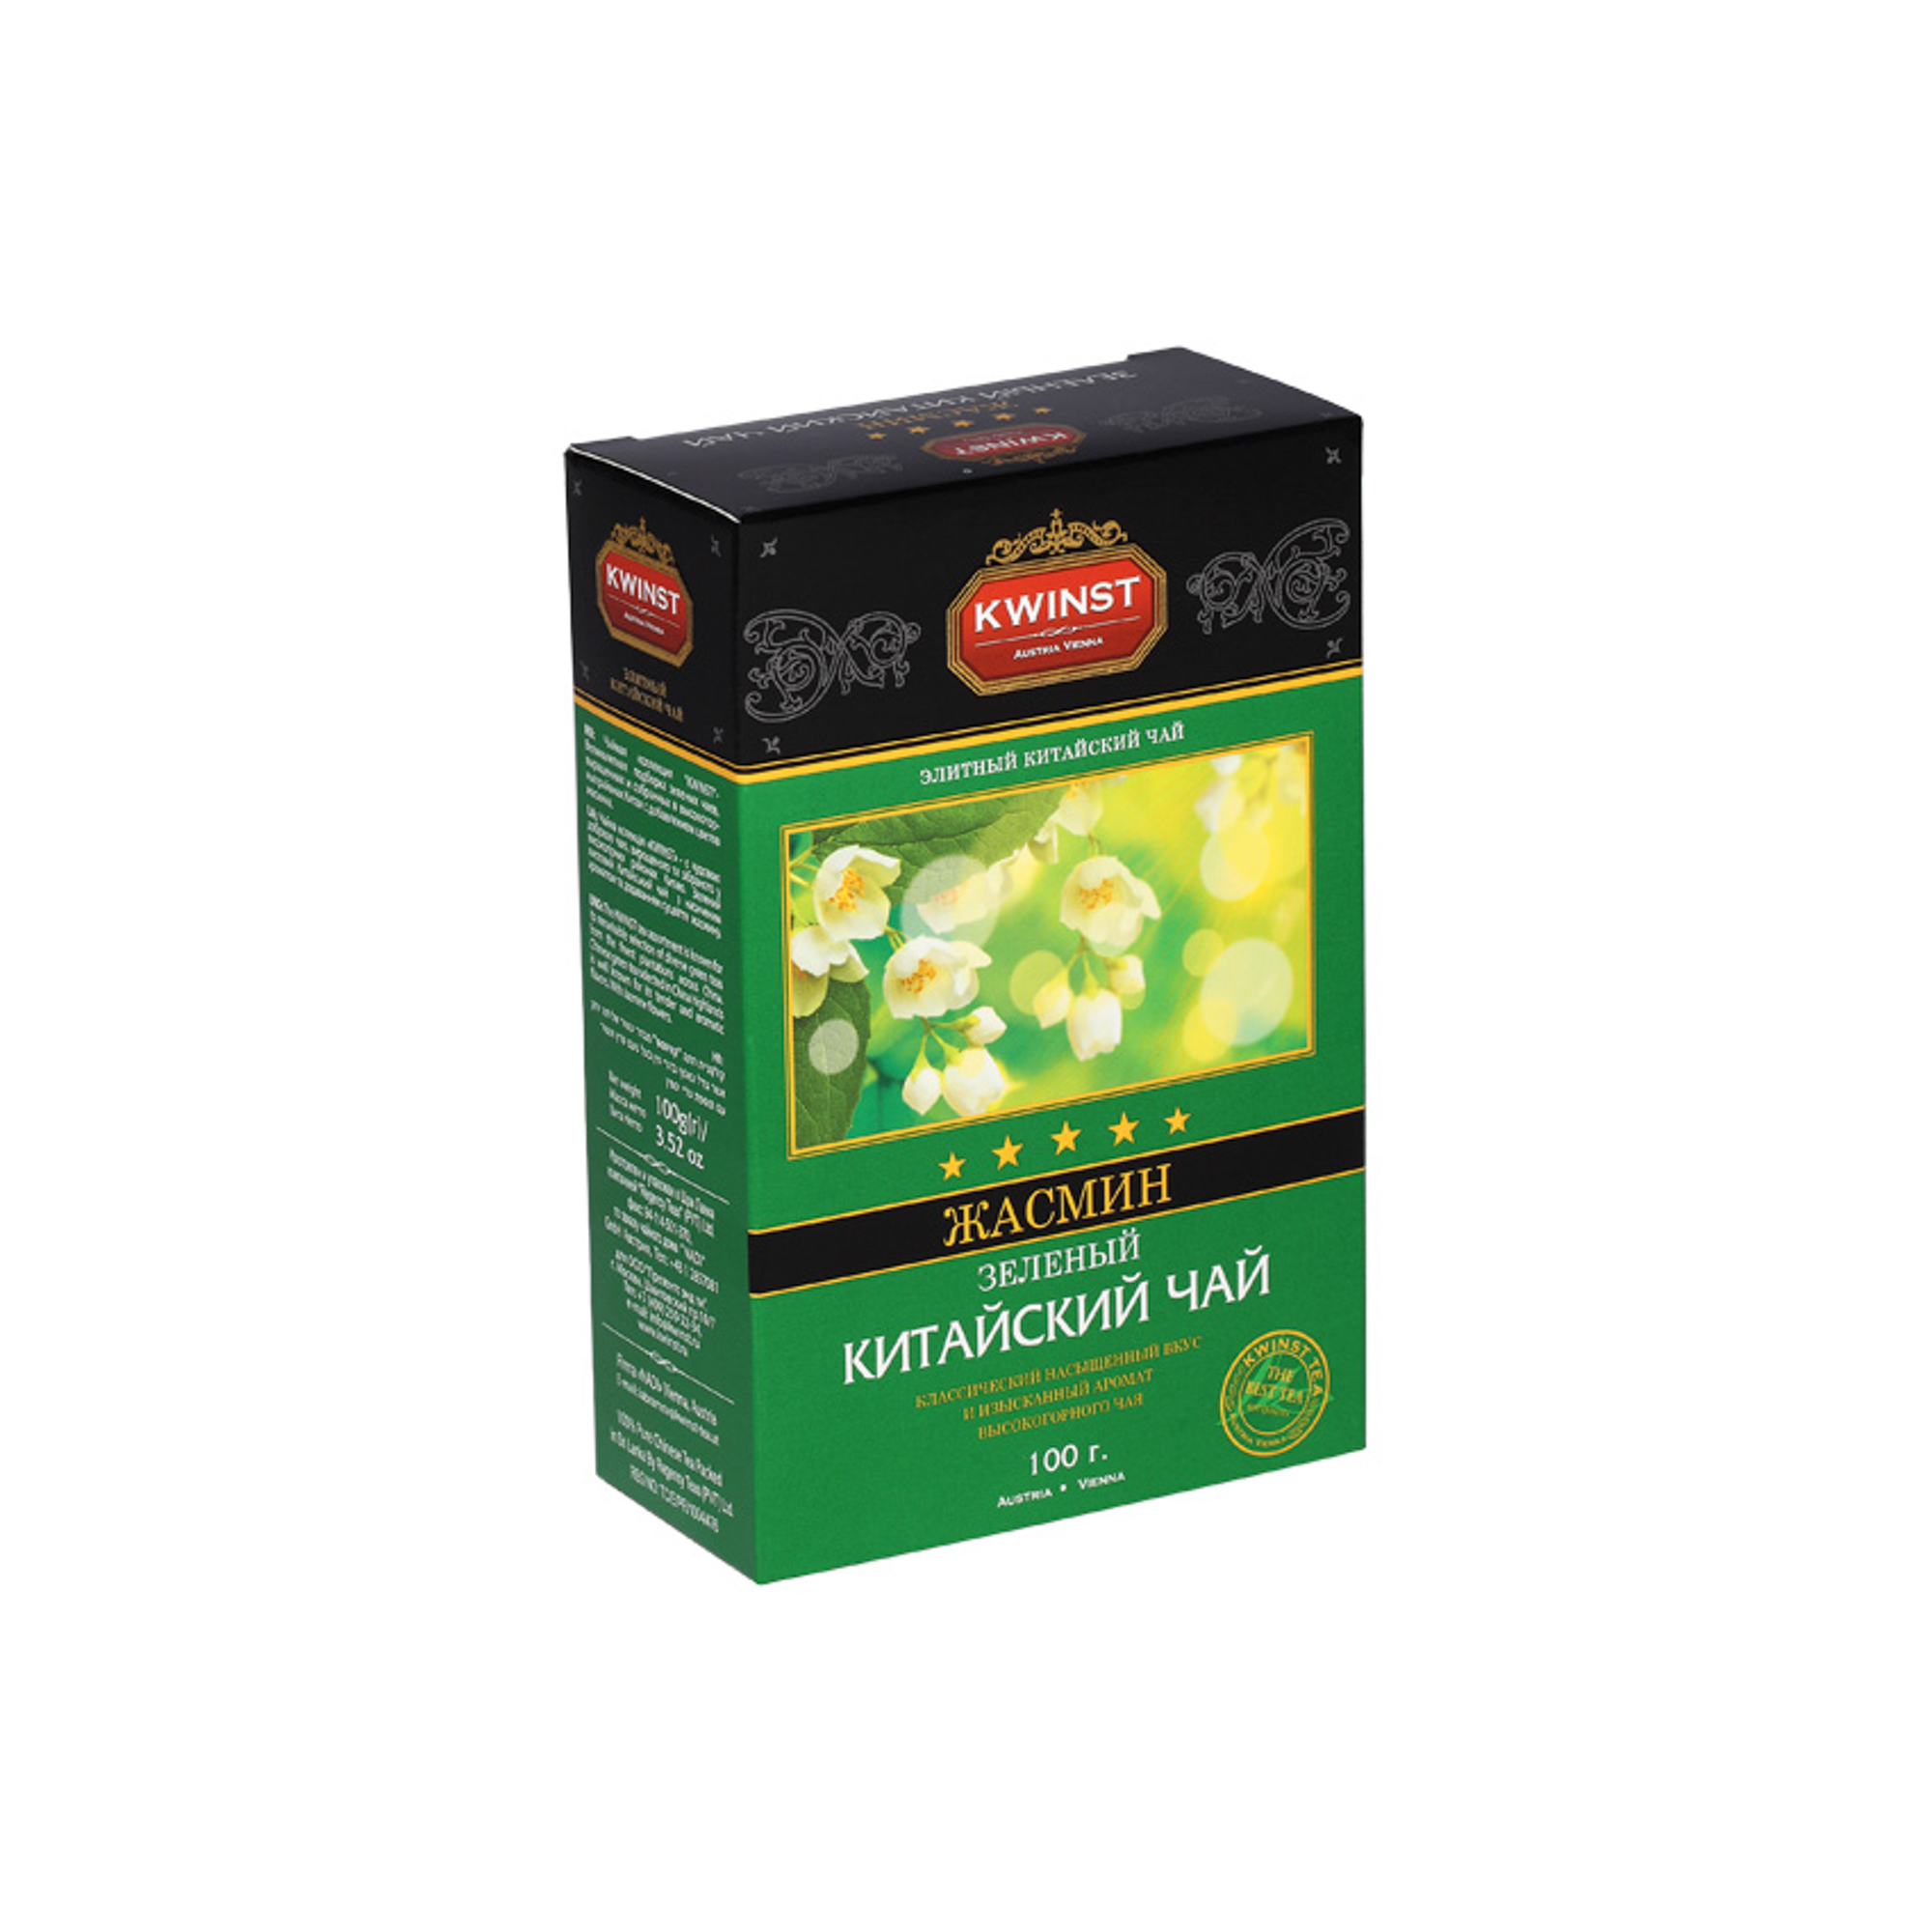 Чай зеленый Kwinst Жасмин листовой 100 г чай зеленый листовой ча бао зеленый шелк китай 100 г